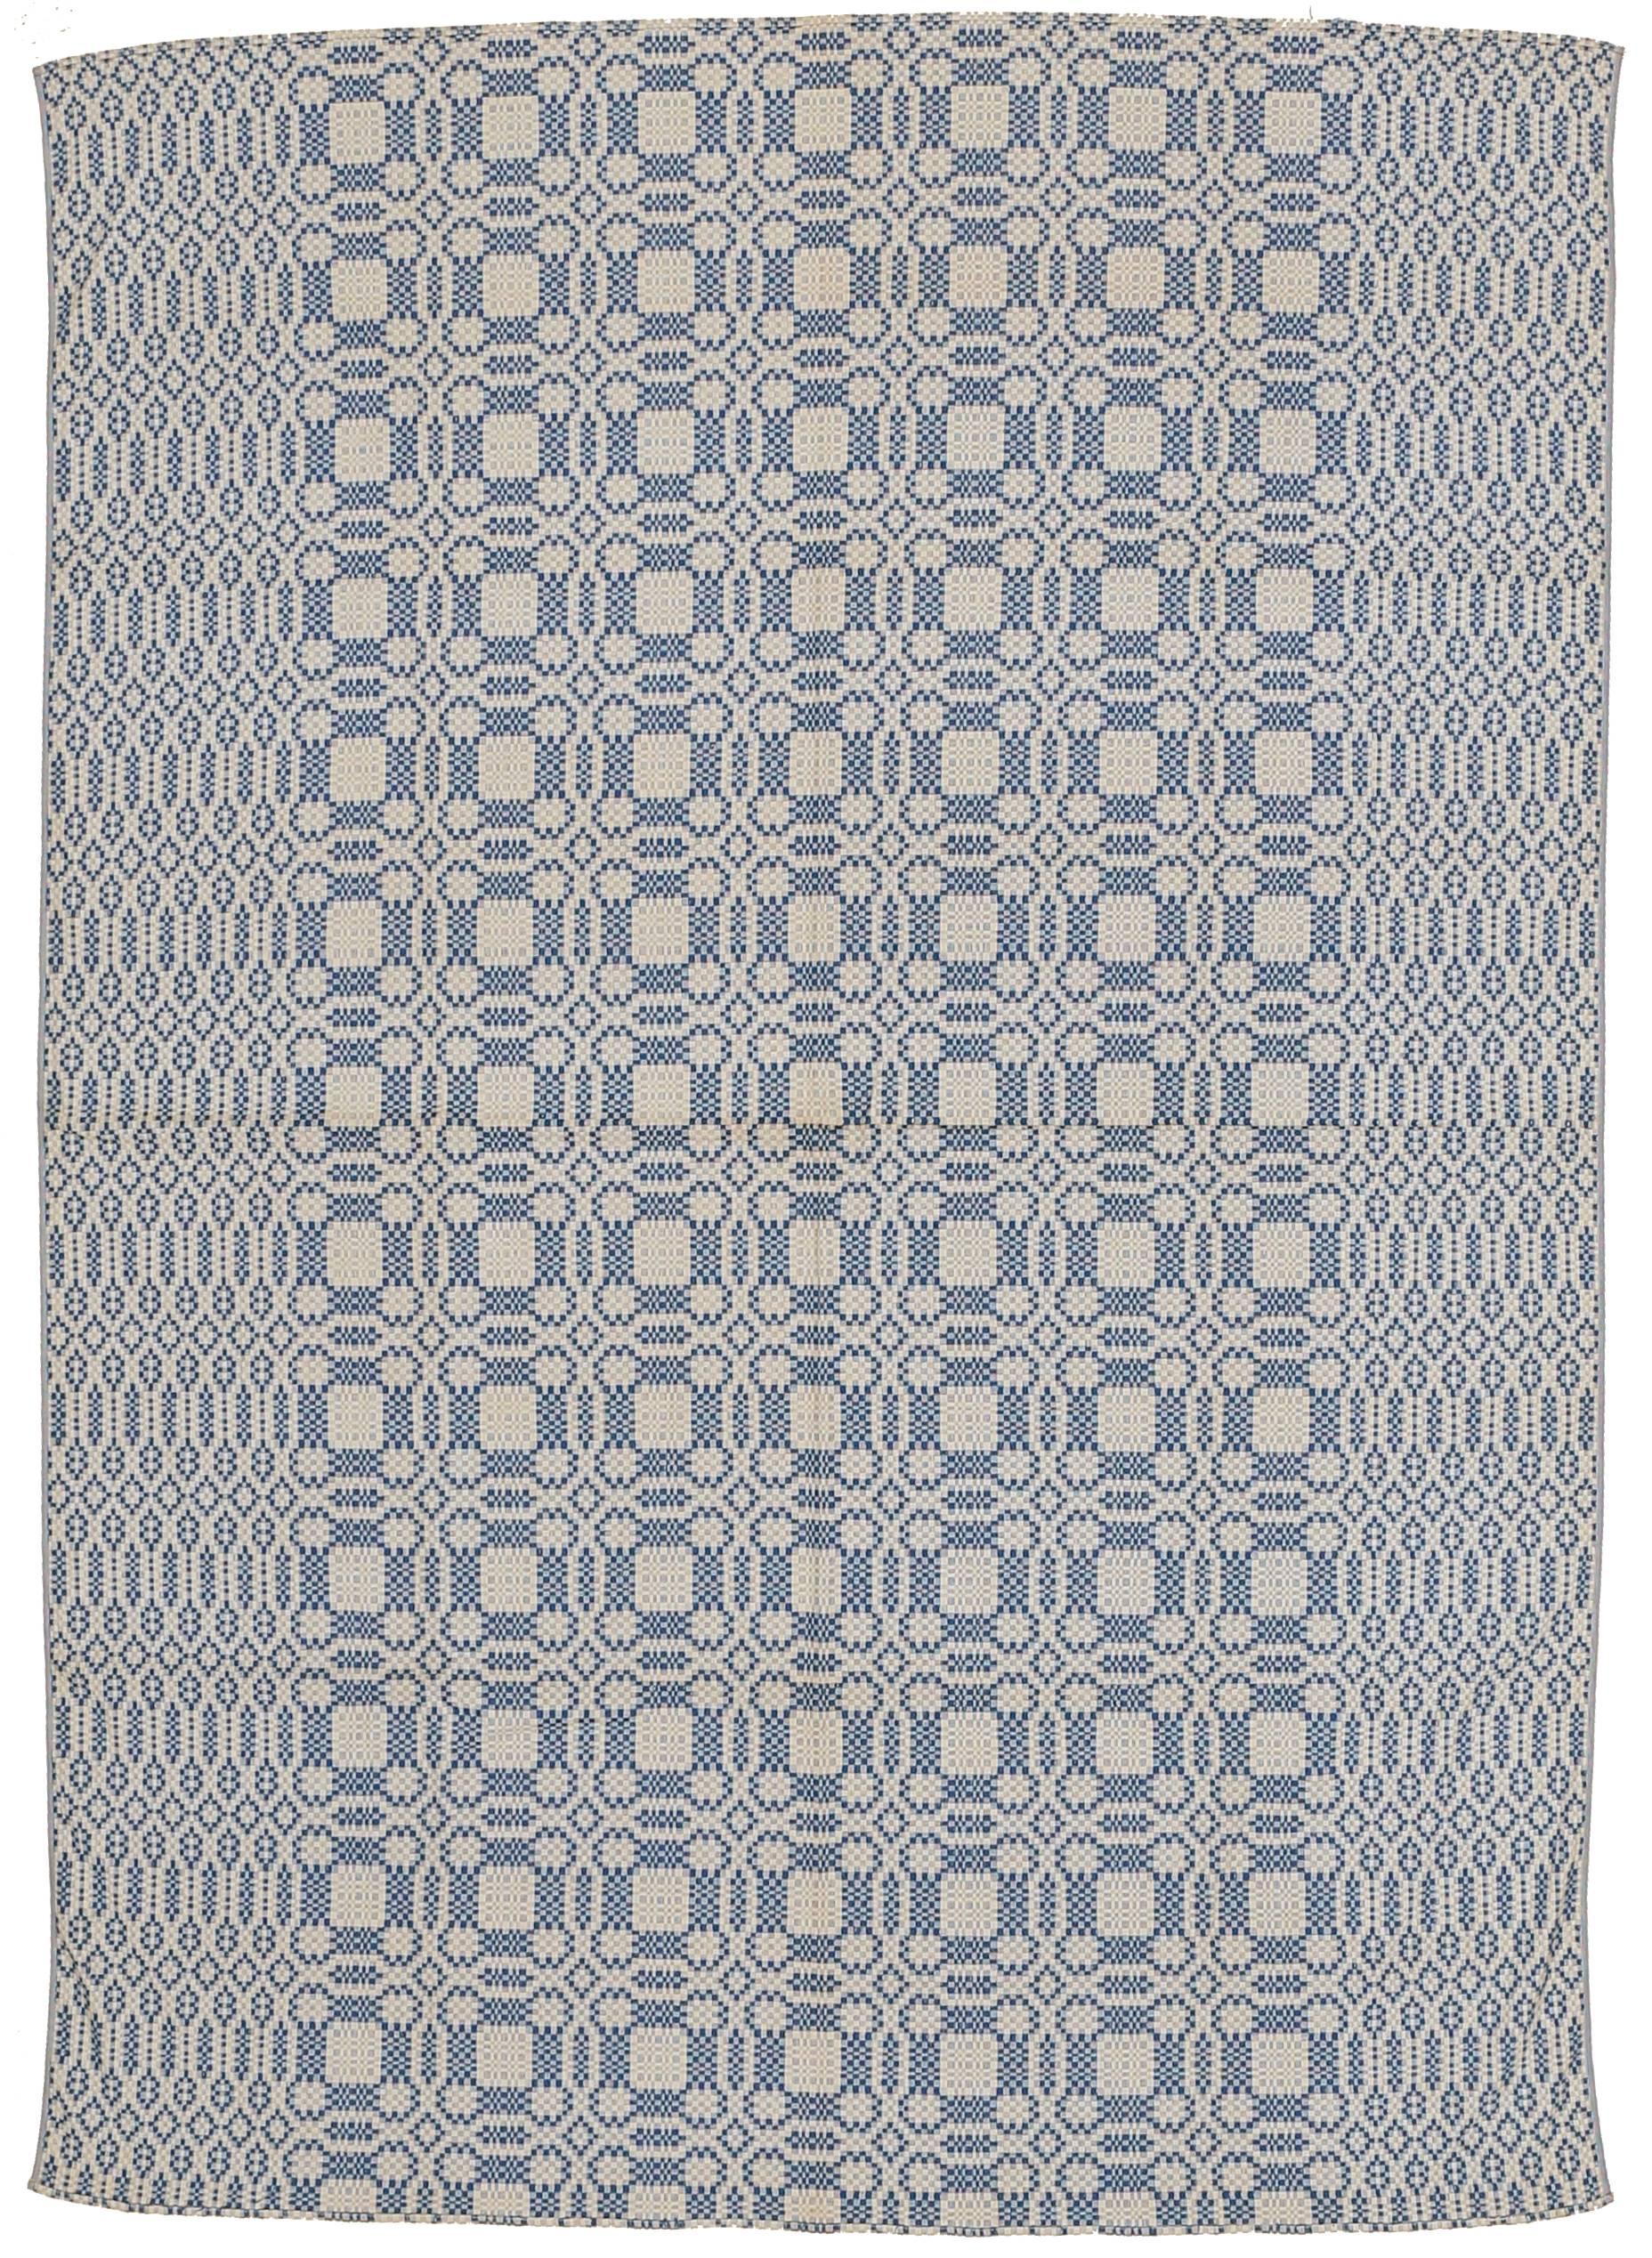 Ein feines antikes nordamerikanisches Wendebett aus Baumwolle, das sich durch ein sich wiederholendes Muster aus sich überlappenden Rondellen mit geometrischen Motiven in mittelhellblau auf elfenbeinfarbenem Hintergrund auszeichnet. Die geometrische